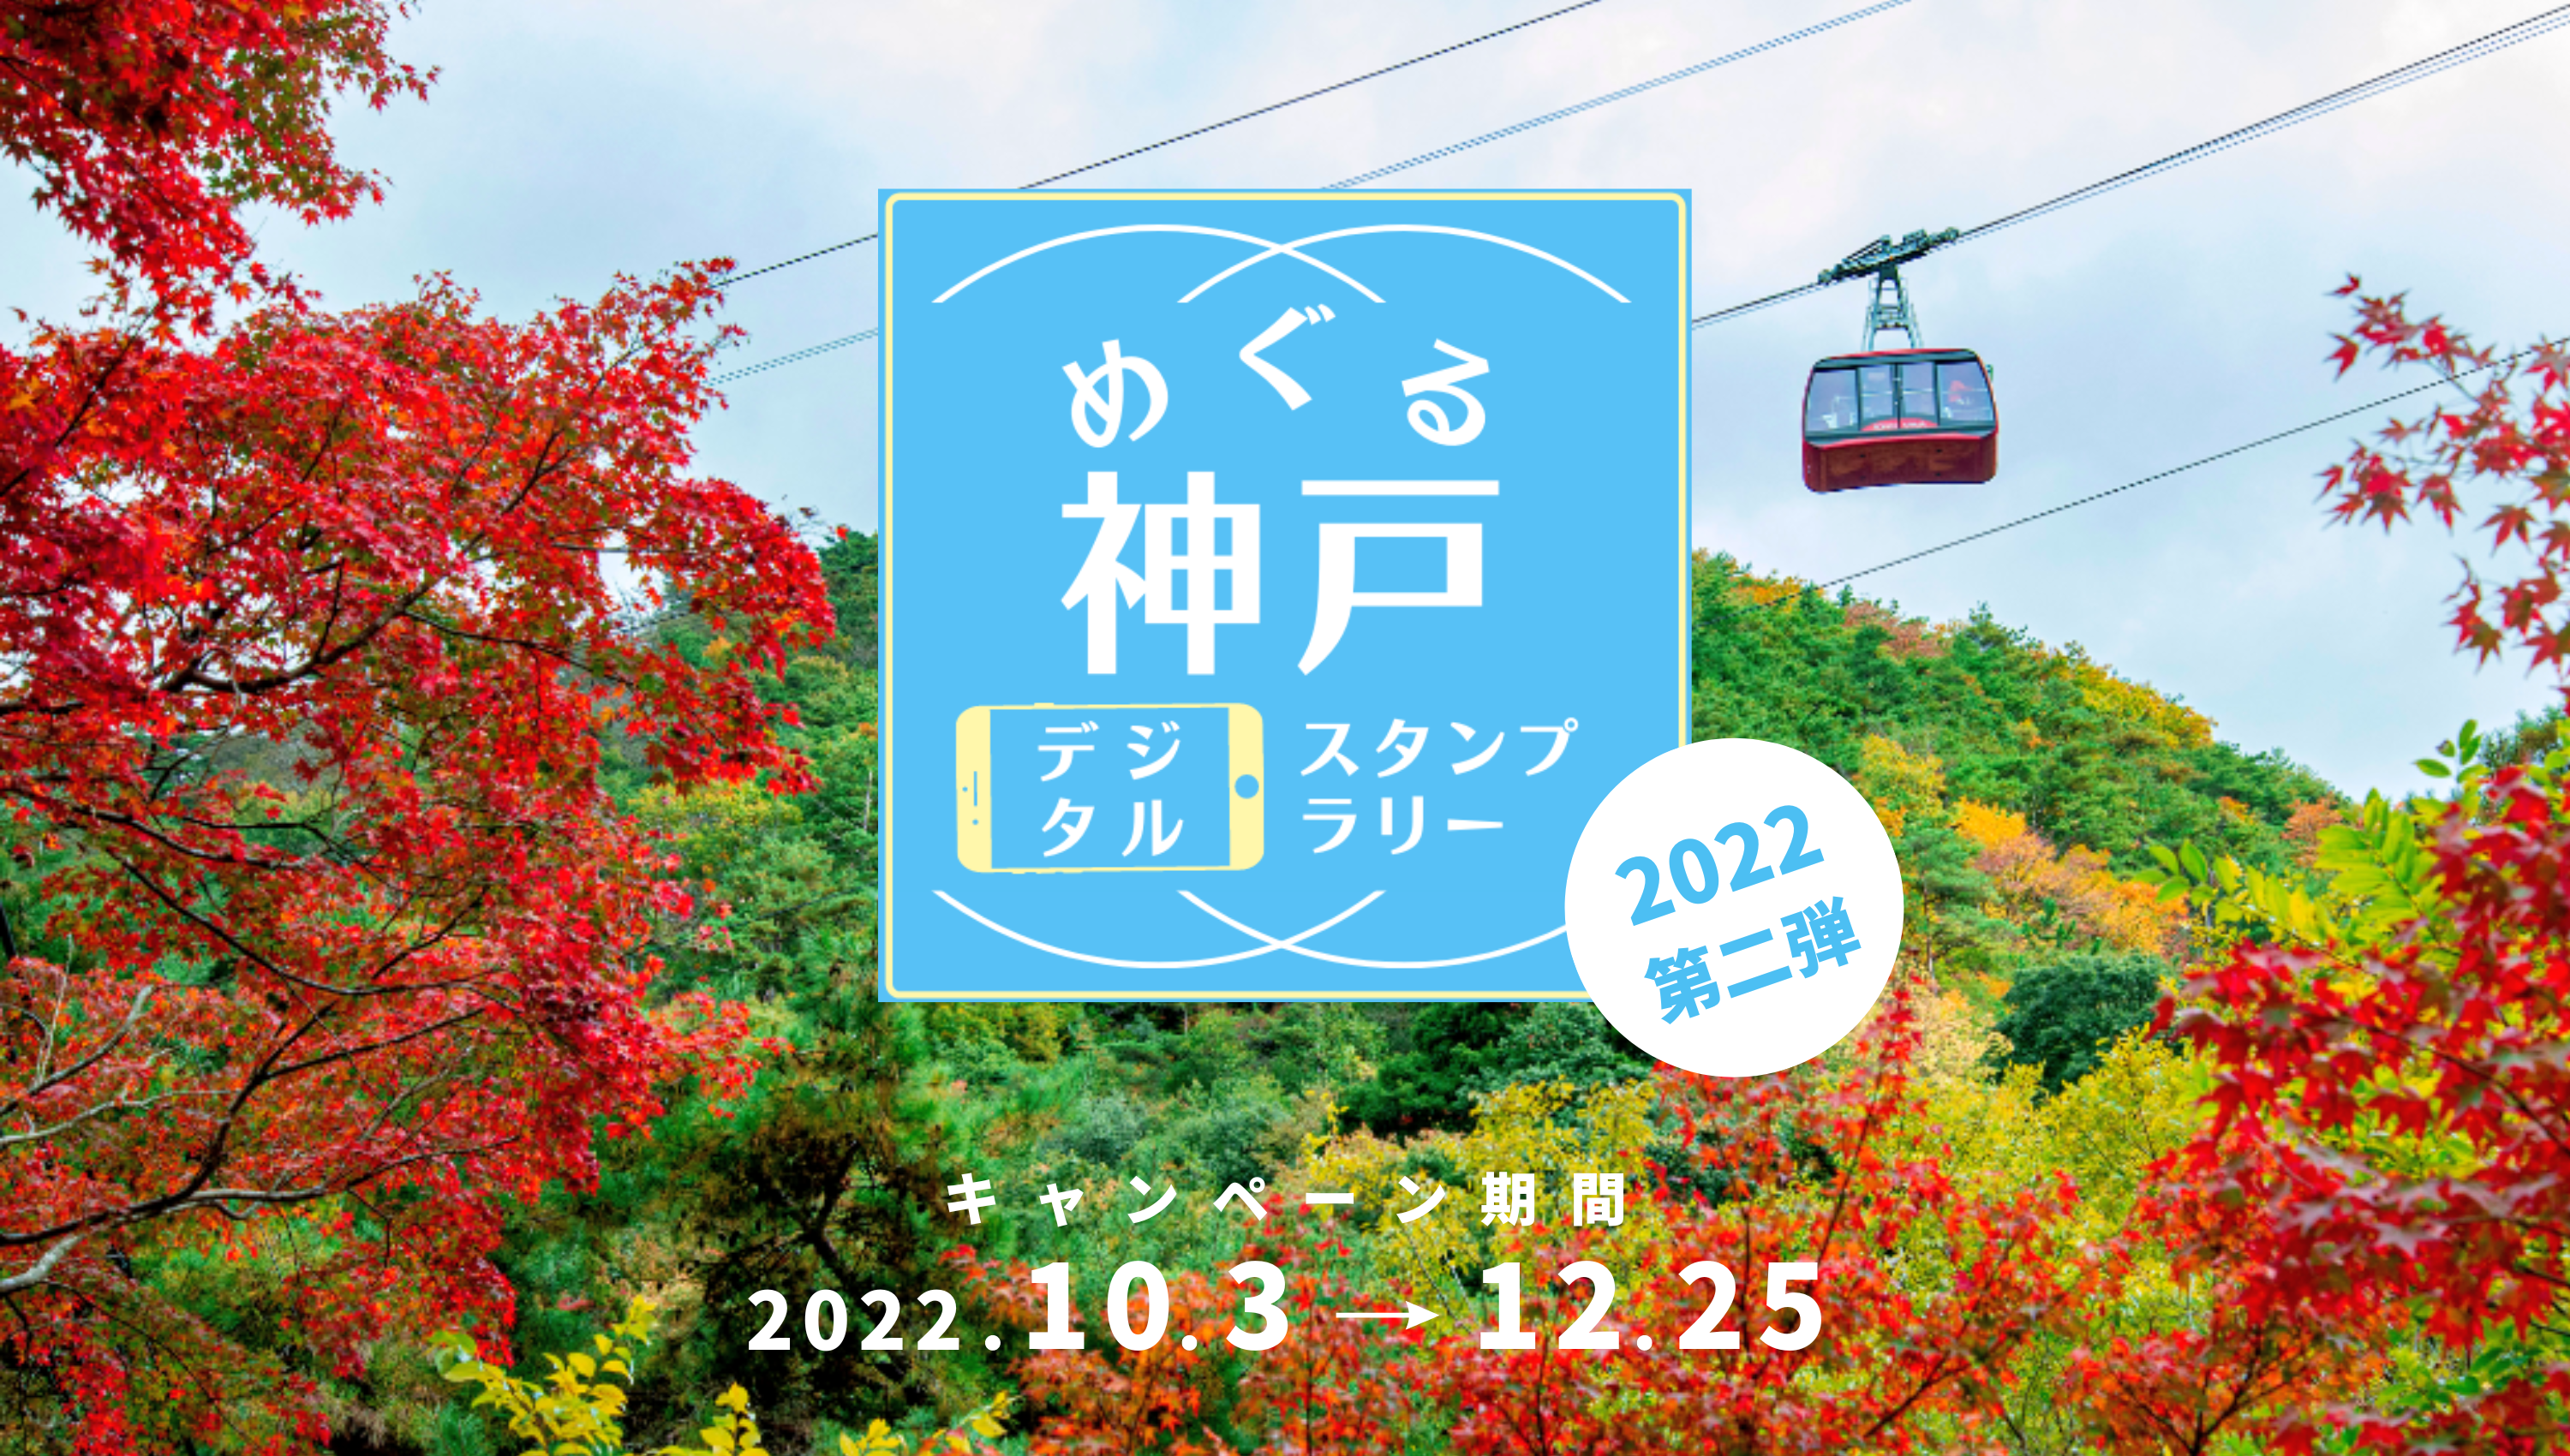 めぐる神戸 デジタルスタンプラリー キャンペーン